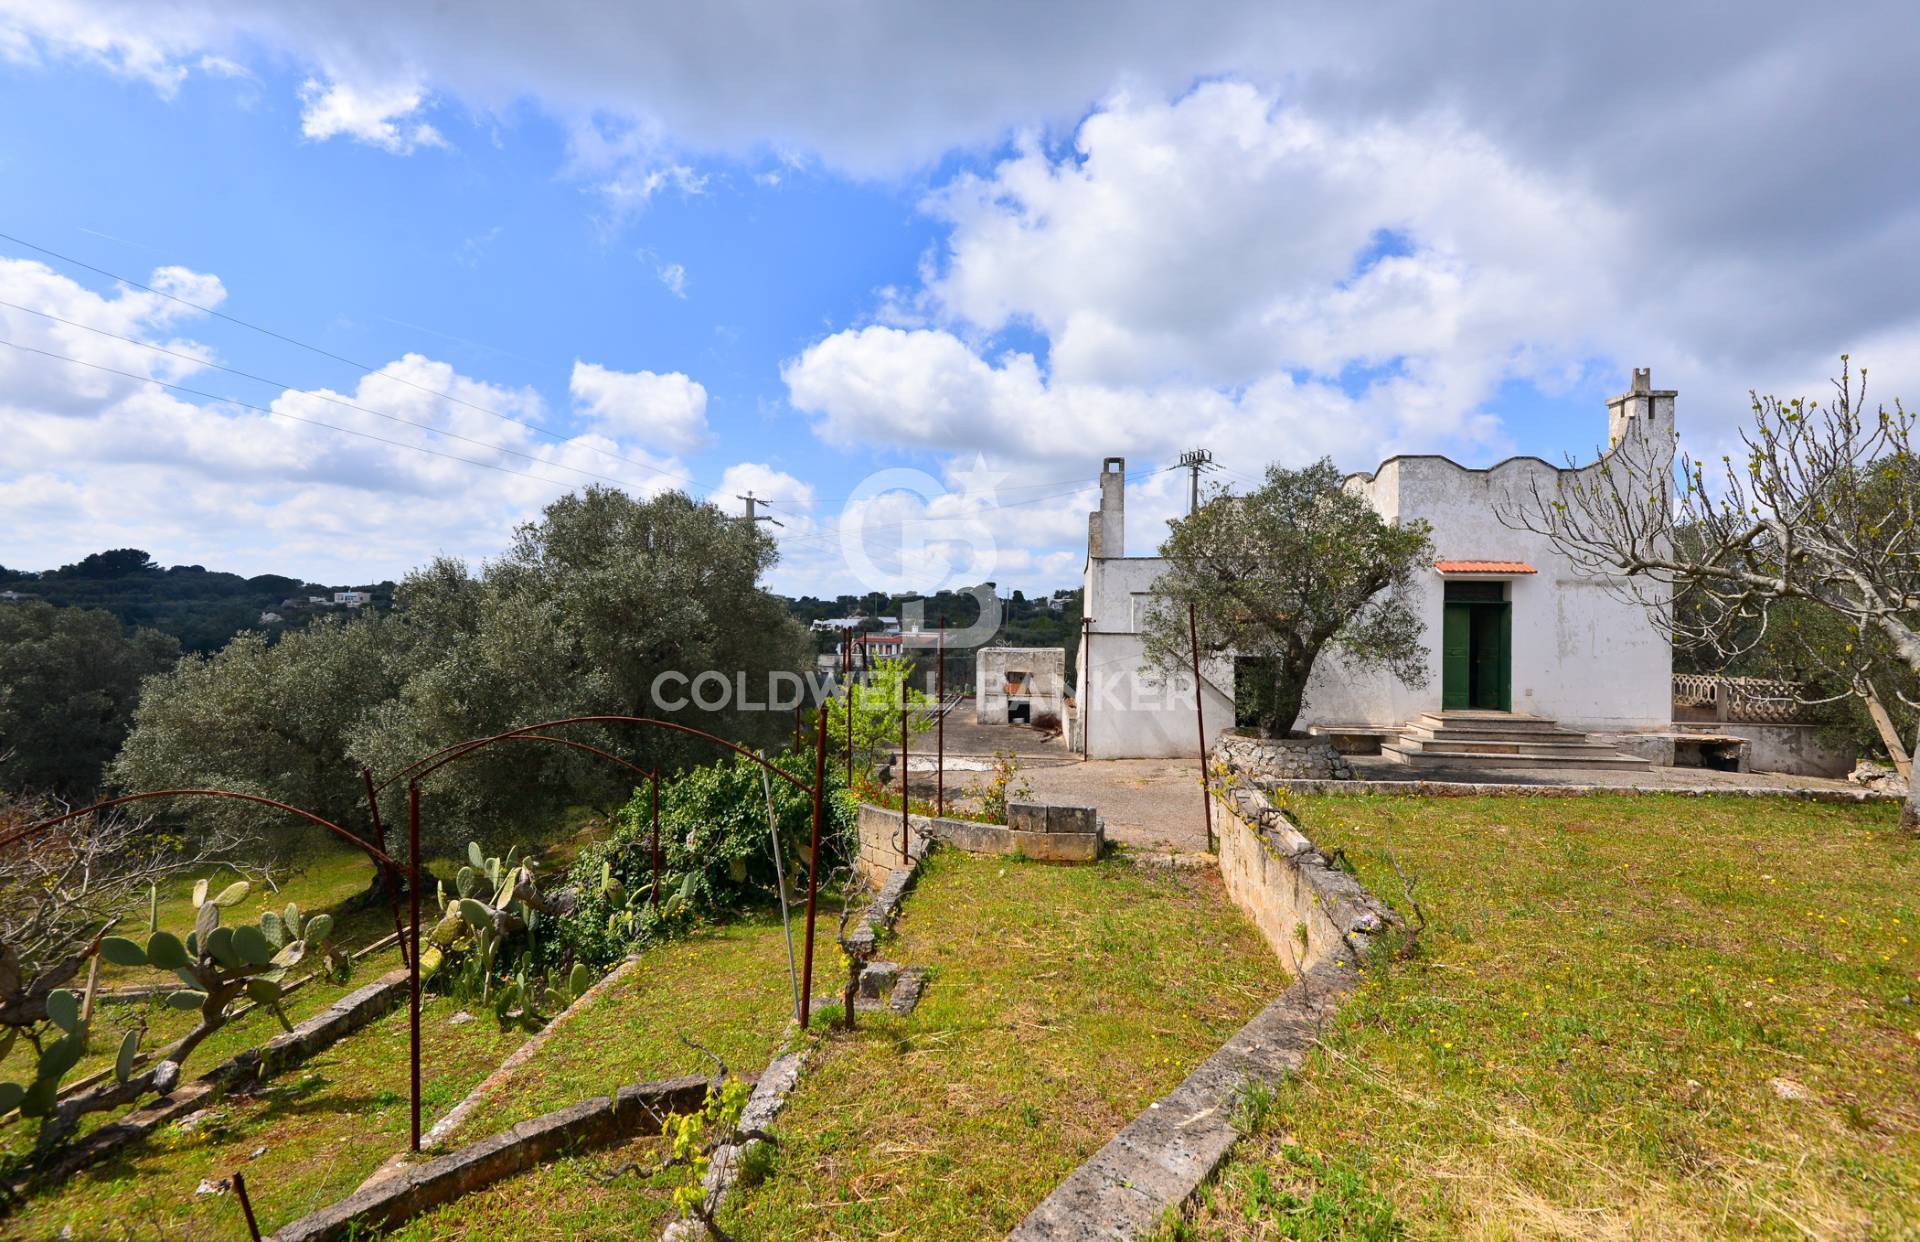 Villa in vendita a Ostuni, 3 locali, prezzo € 135.000 | PortaleAgenzieImmobiliari.it